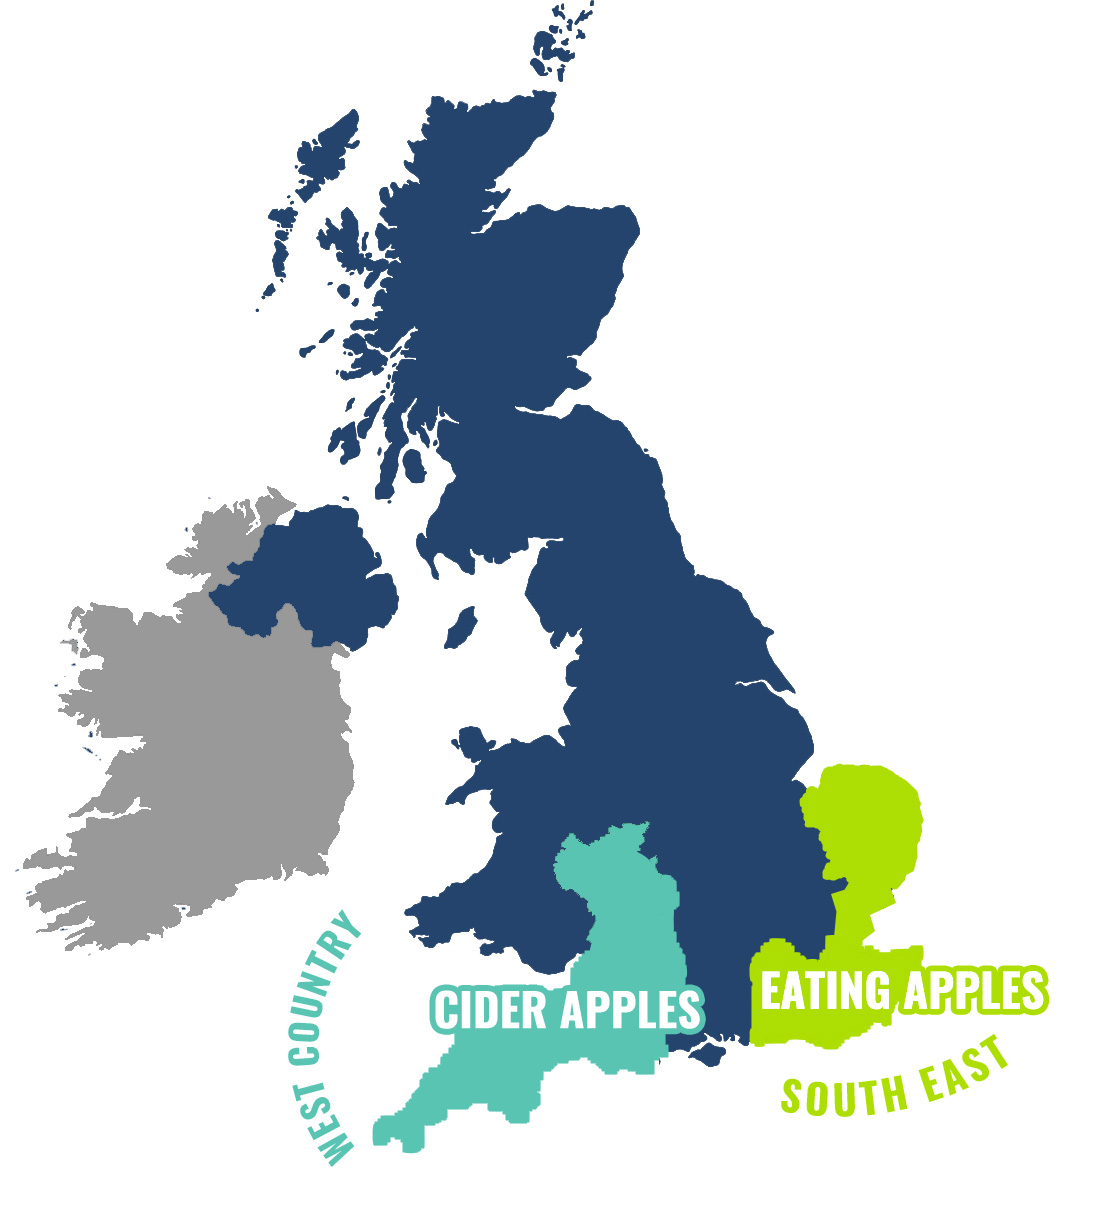 UK Cider Apples Map